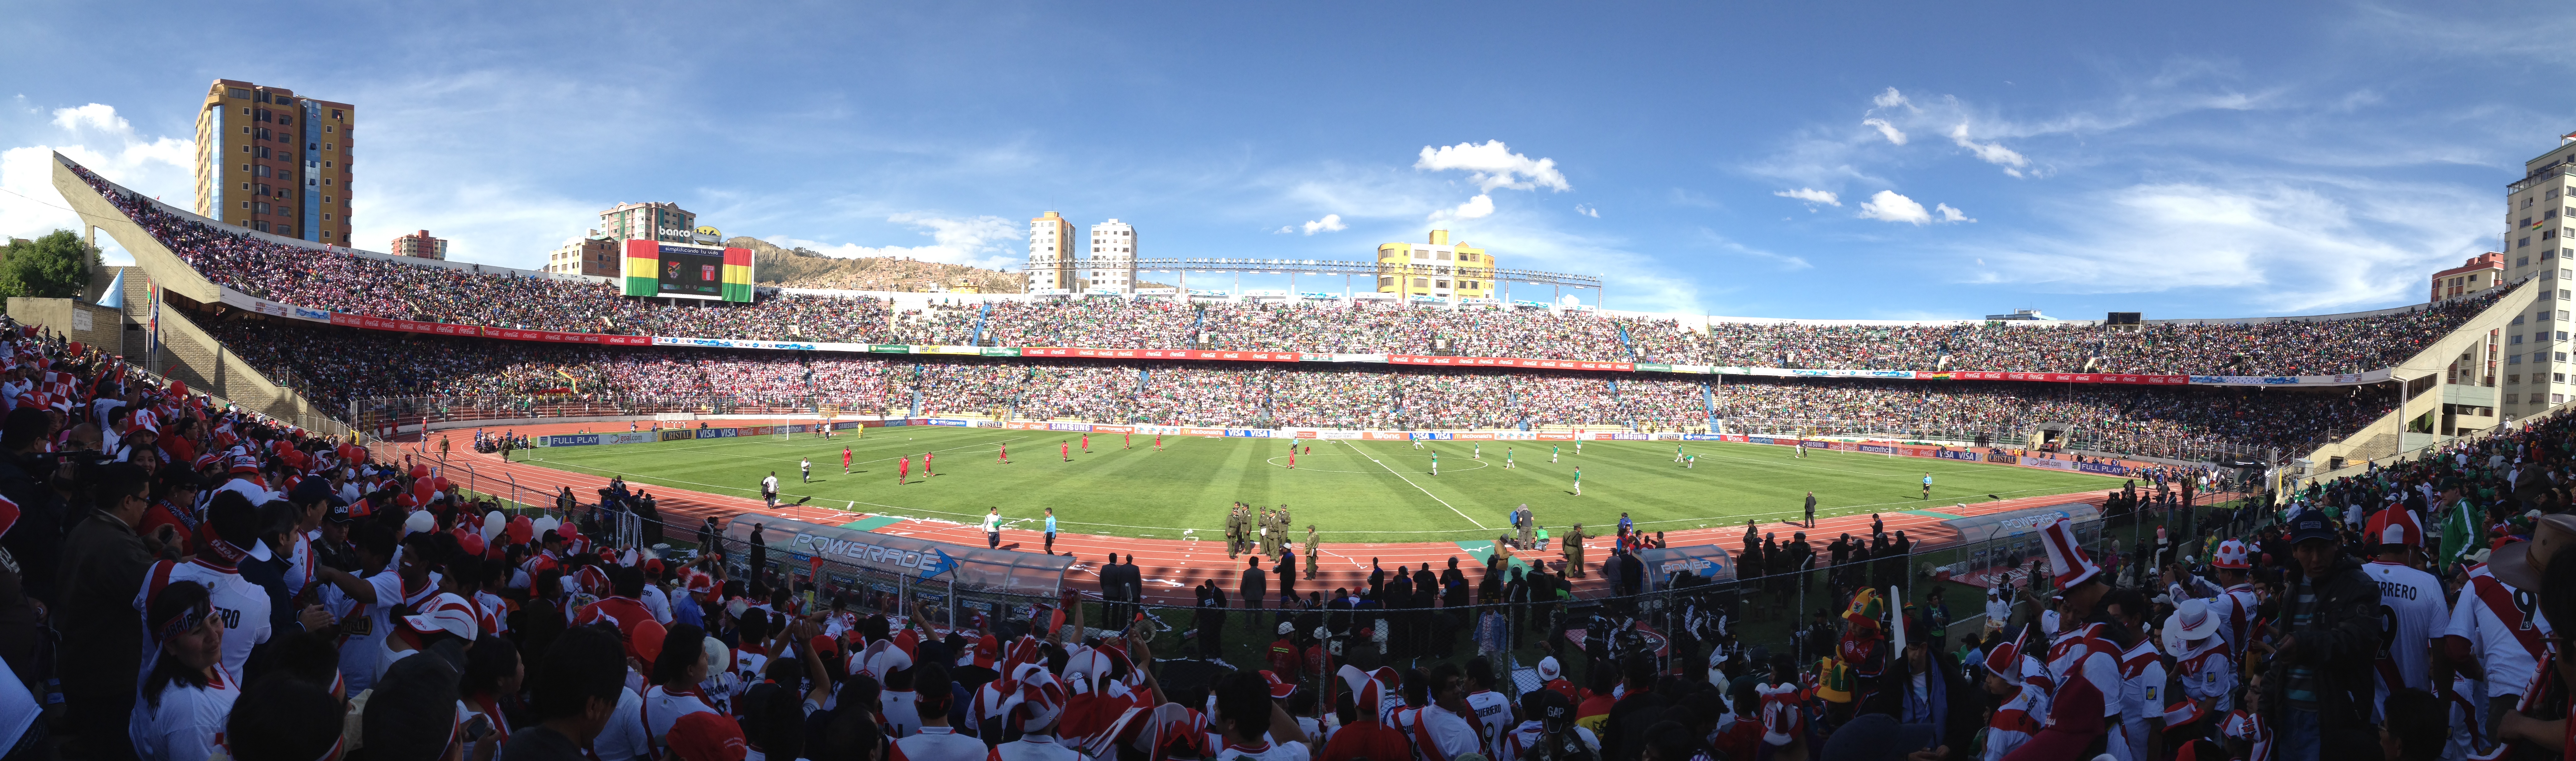 Bolivia-Peru in het Hernando Siles Stadion in La Paz - Foto van Eddie Avila